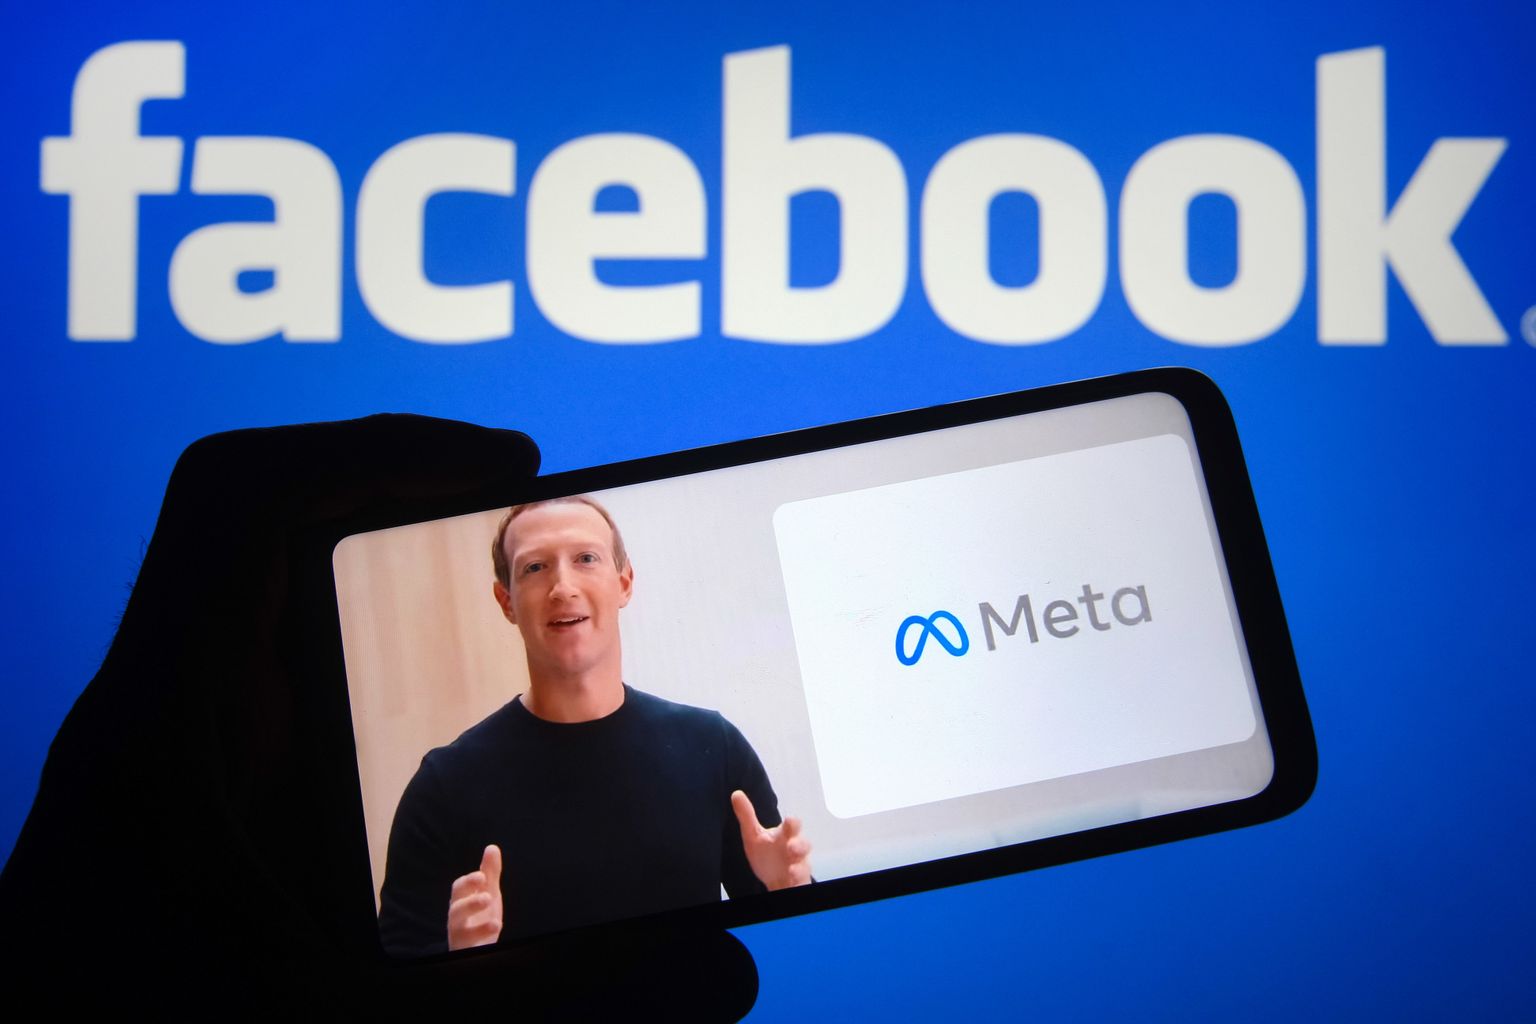 Facebooki asutaja ja tegevjuht Mark Zuckerberg 28. oktoobril teatamas, et Facebook Inc hakkab kandma nime Meta